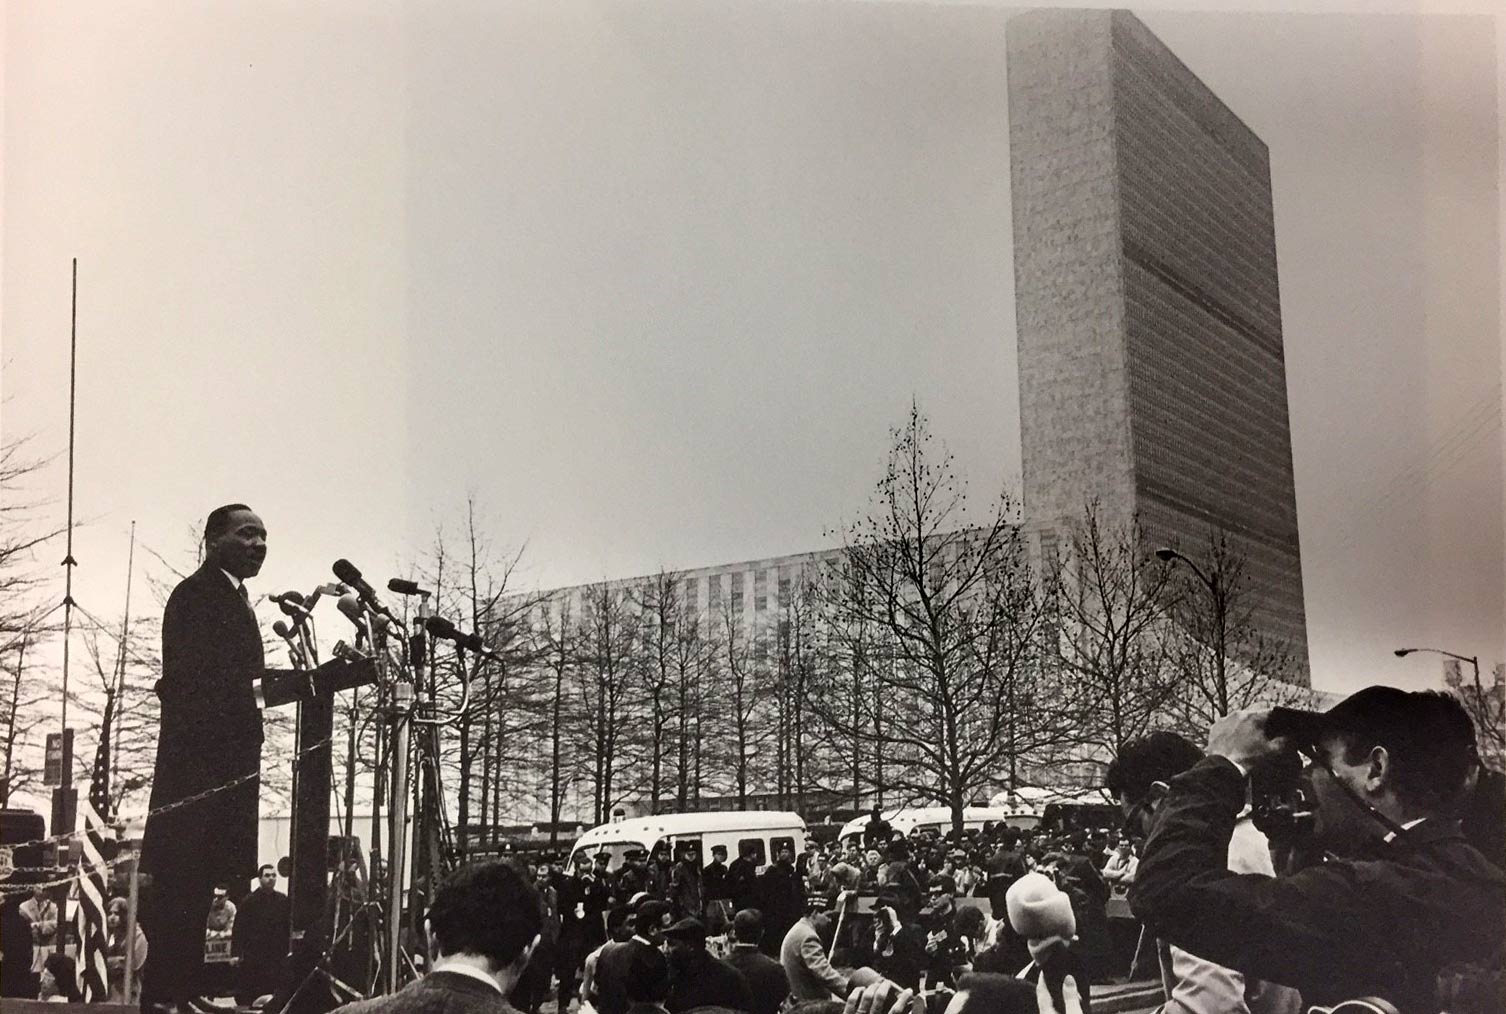 À partir d'une plate-forme surélevée, le révérend Martin Luther King Jr. s'adresse à une foule de journalistes réunis à New York